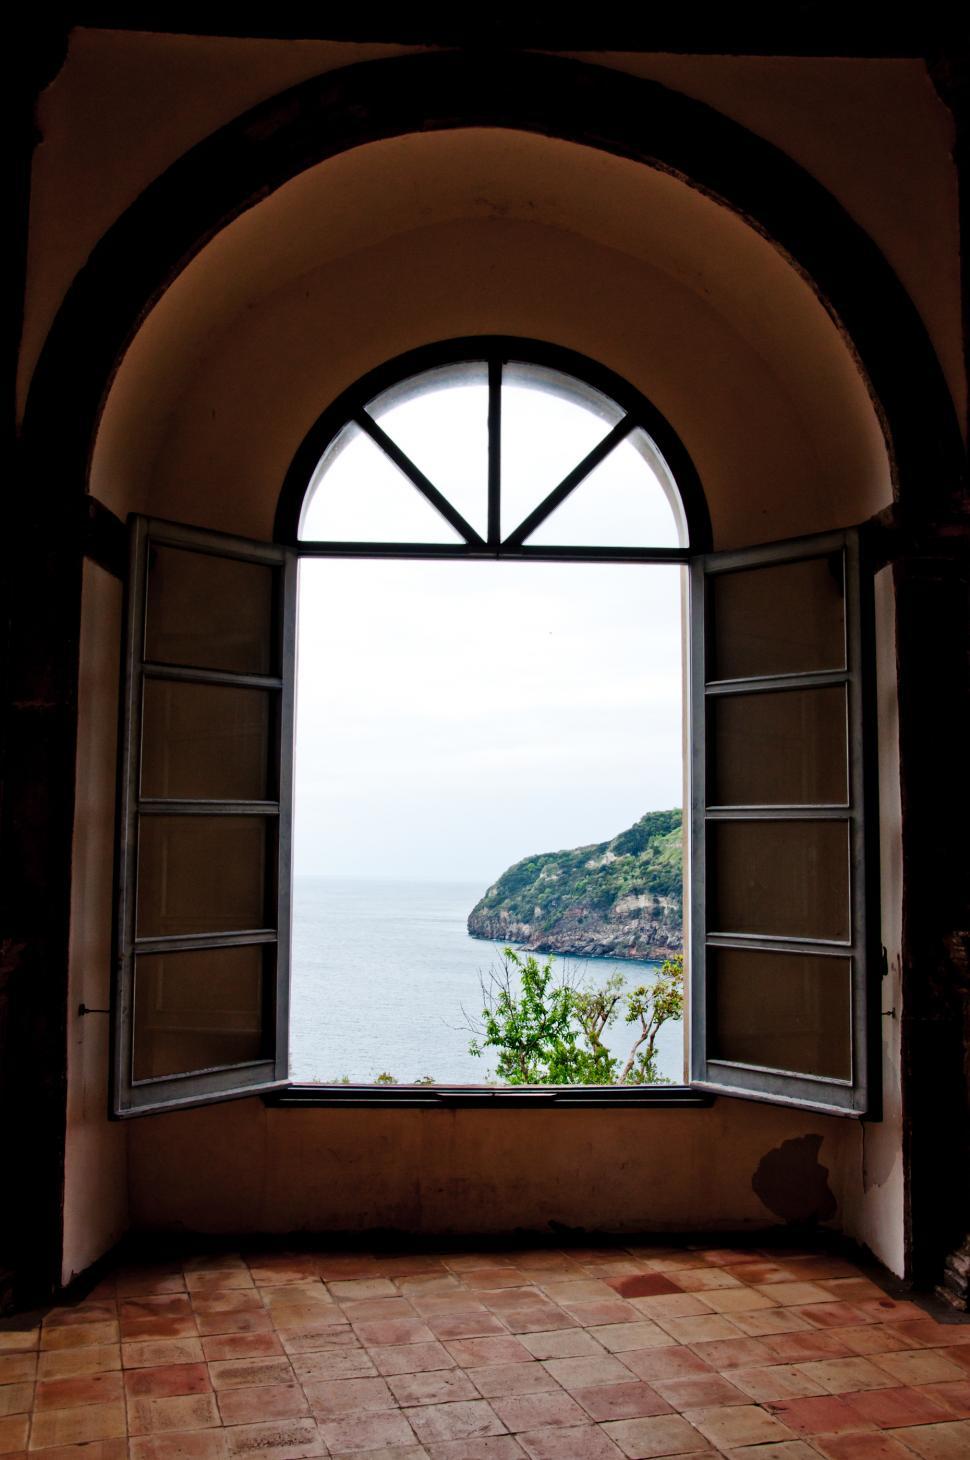 Free Image of Window view in Aragonese castle, Ischia 